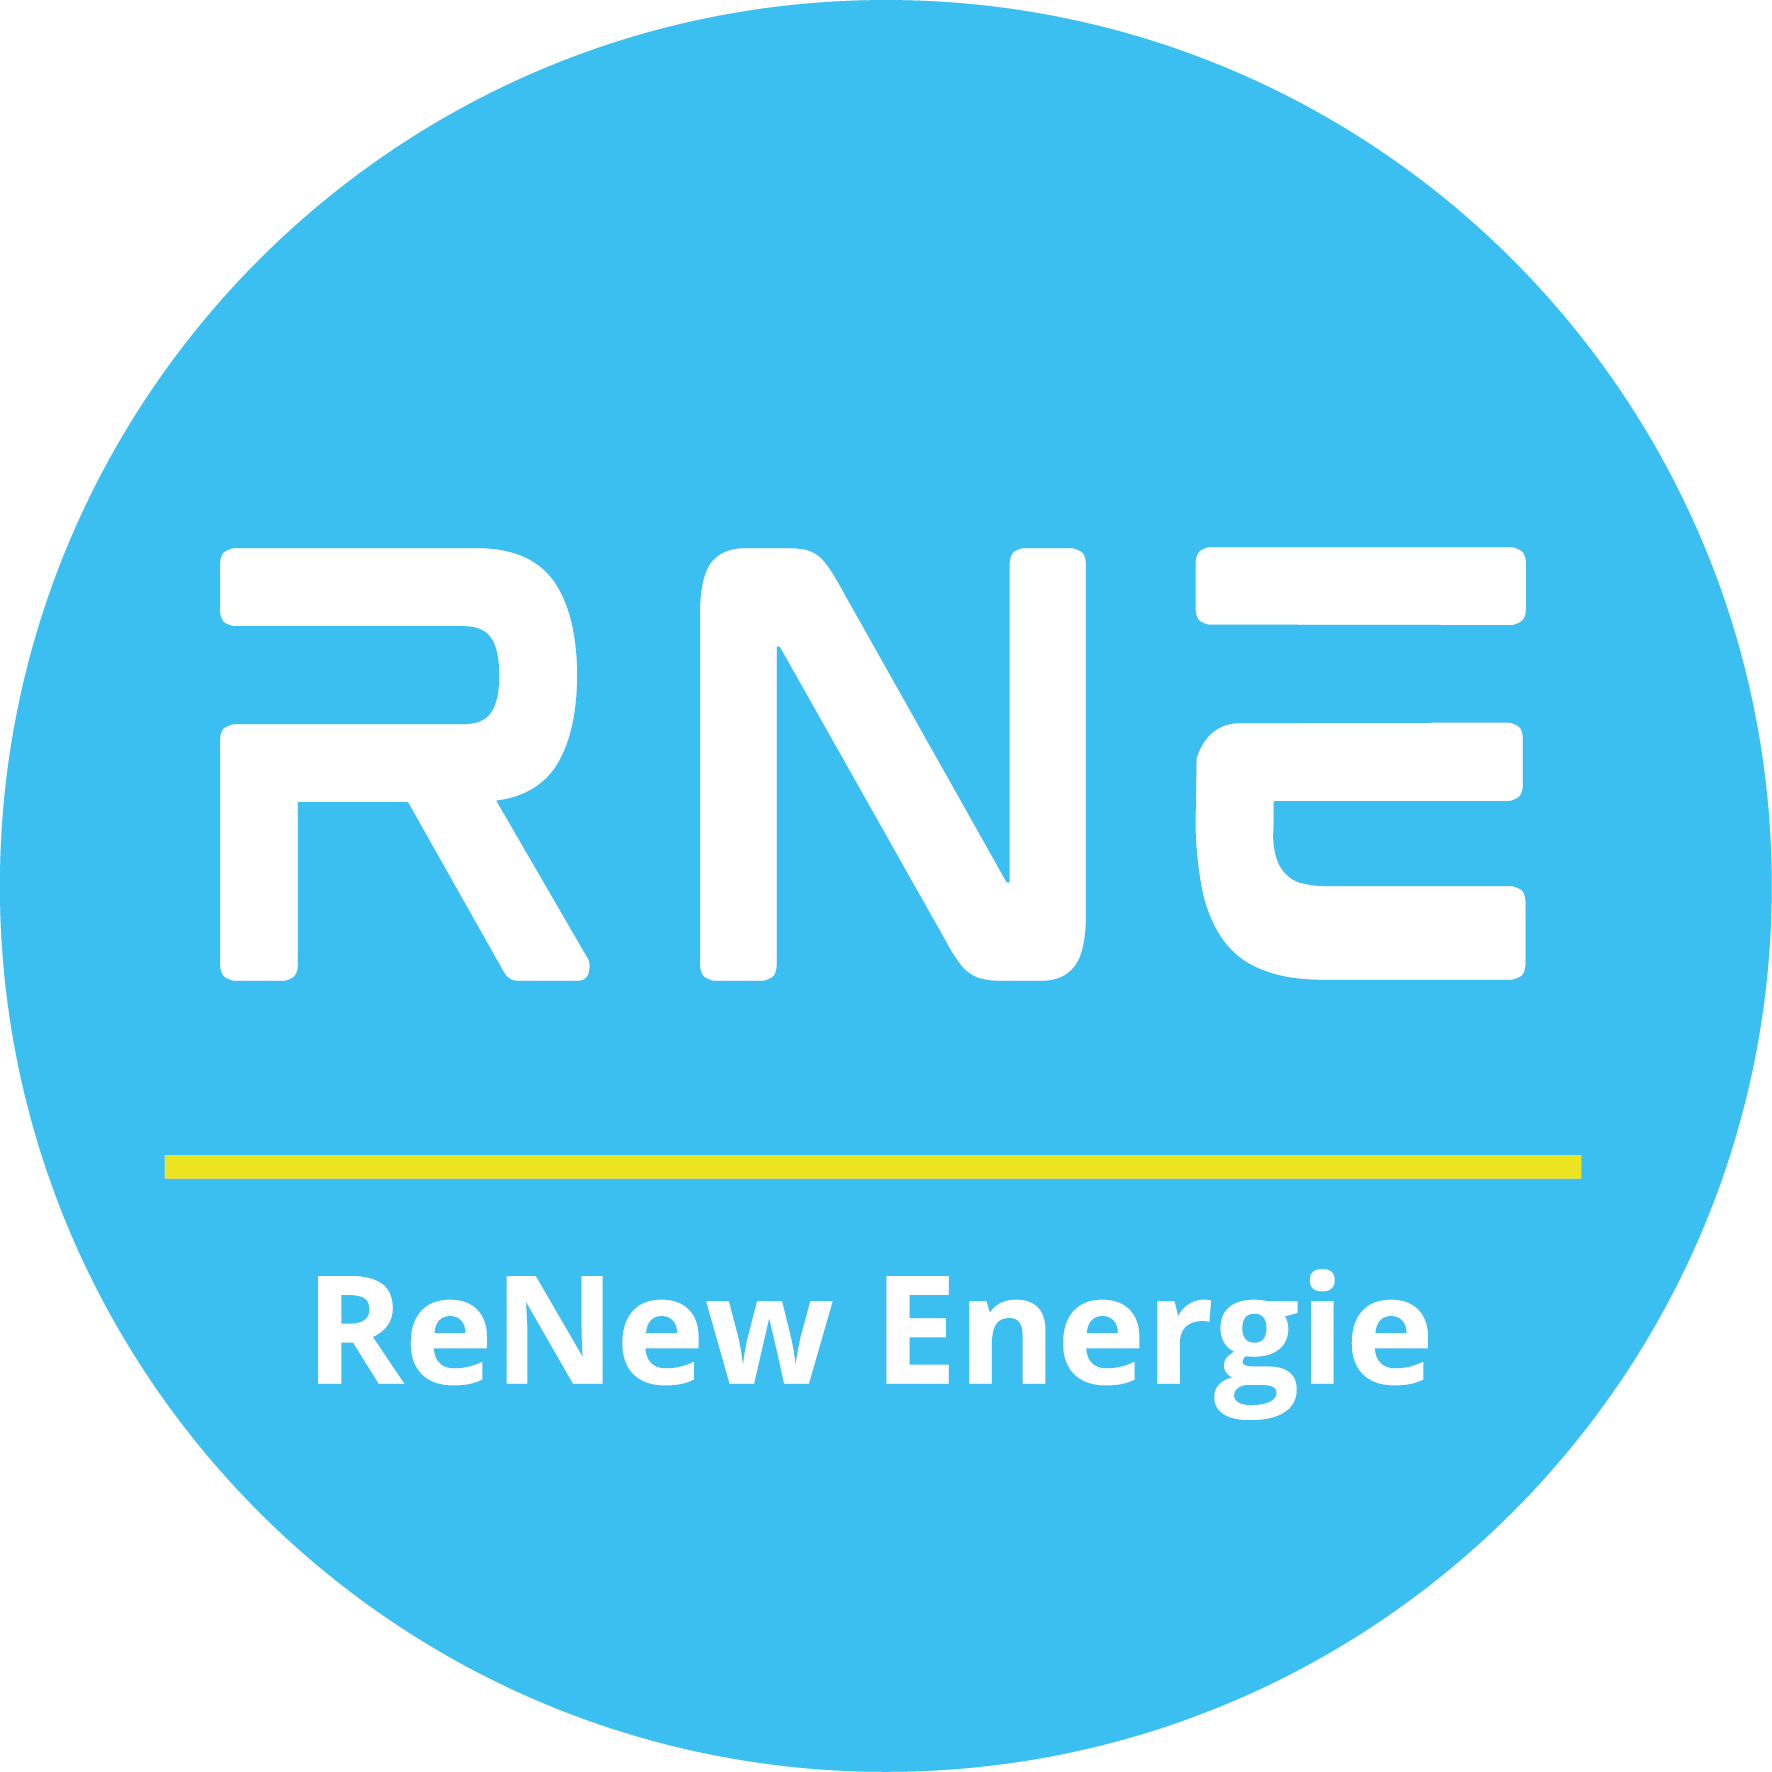 RNE – ReNew Energie